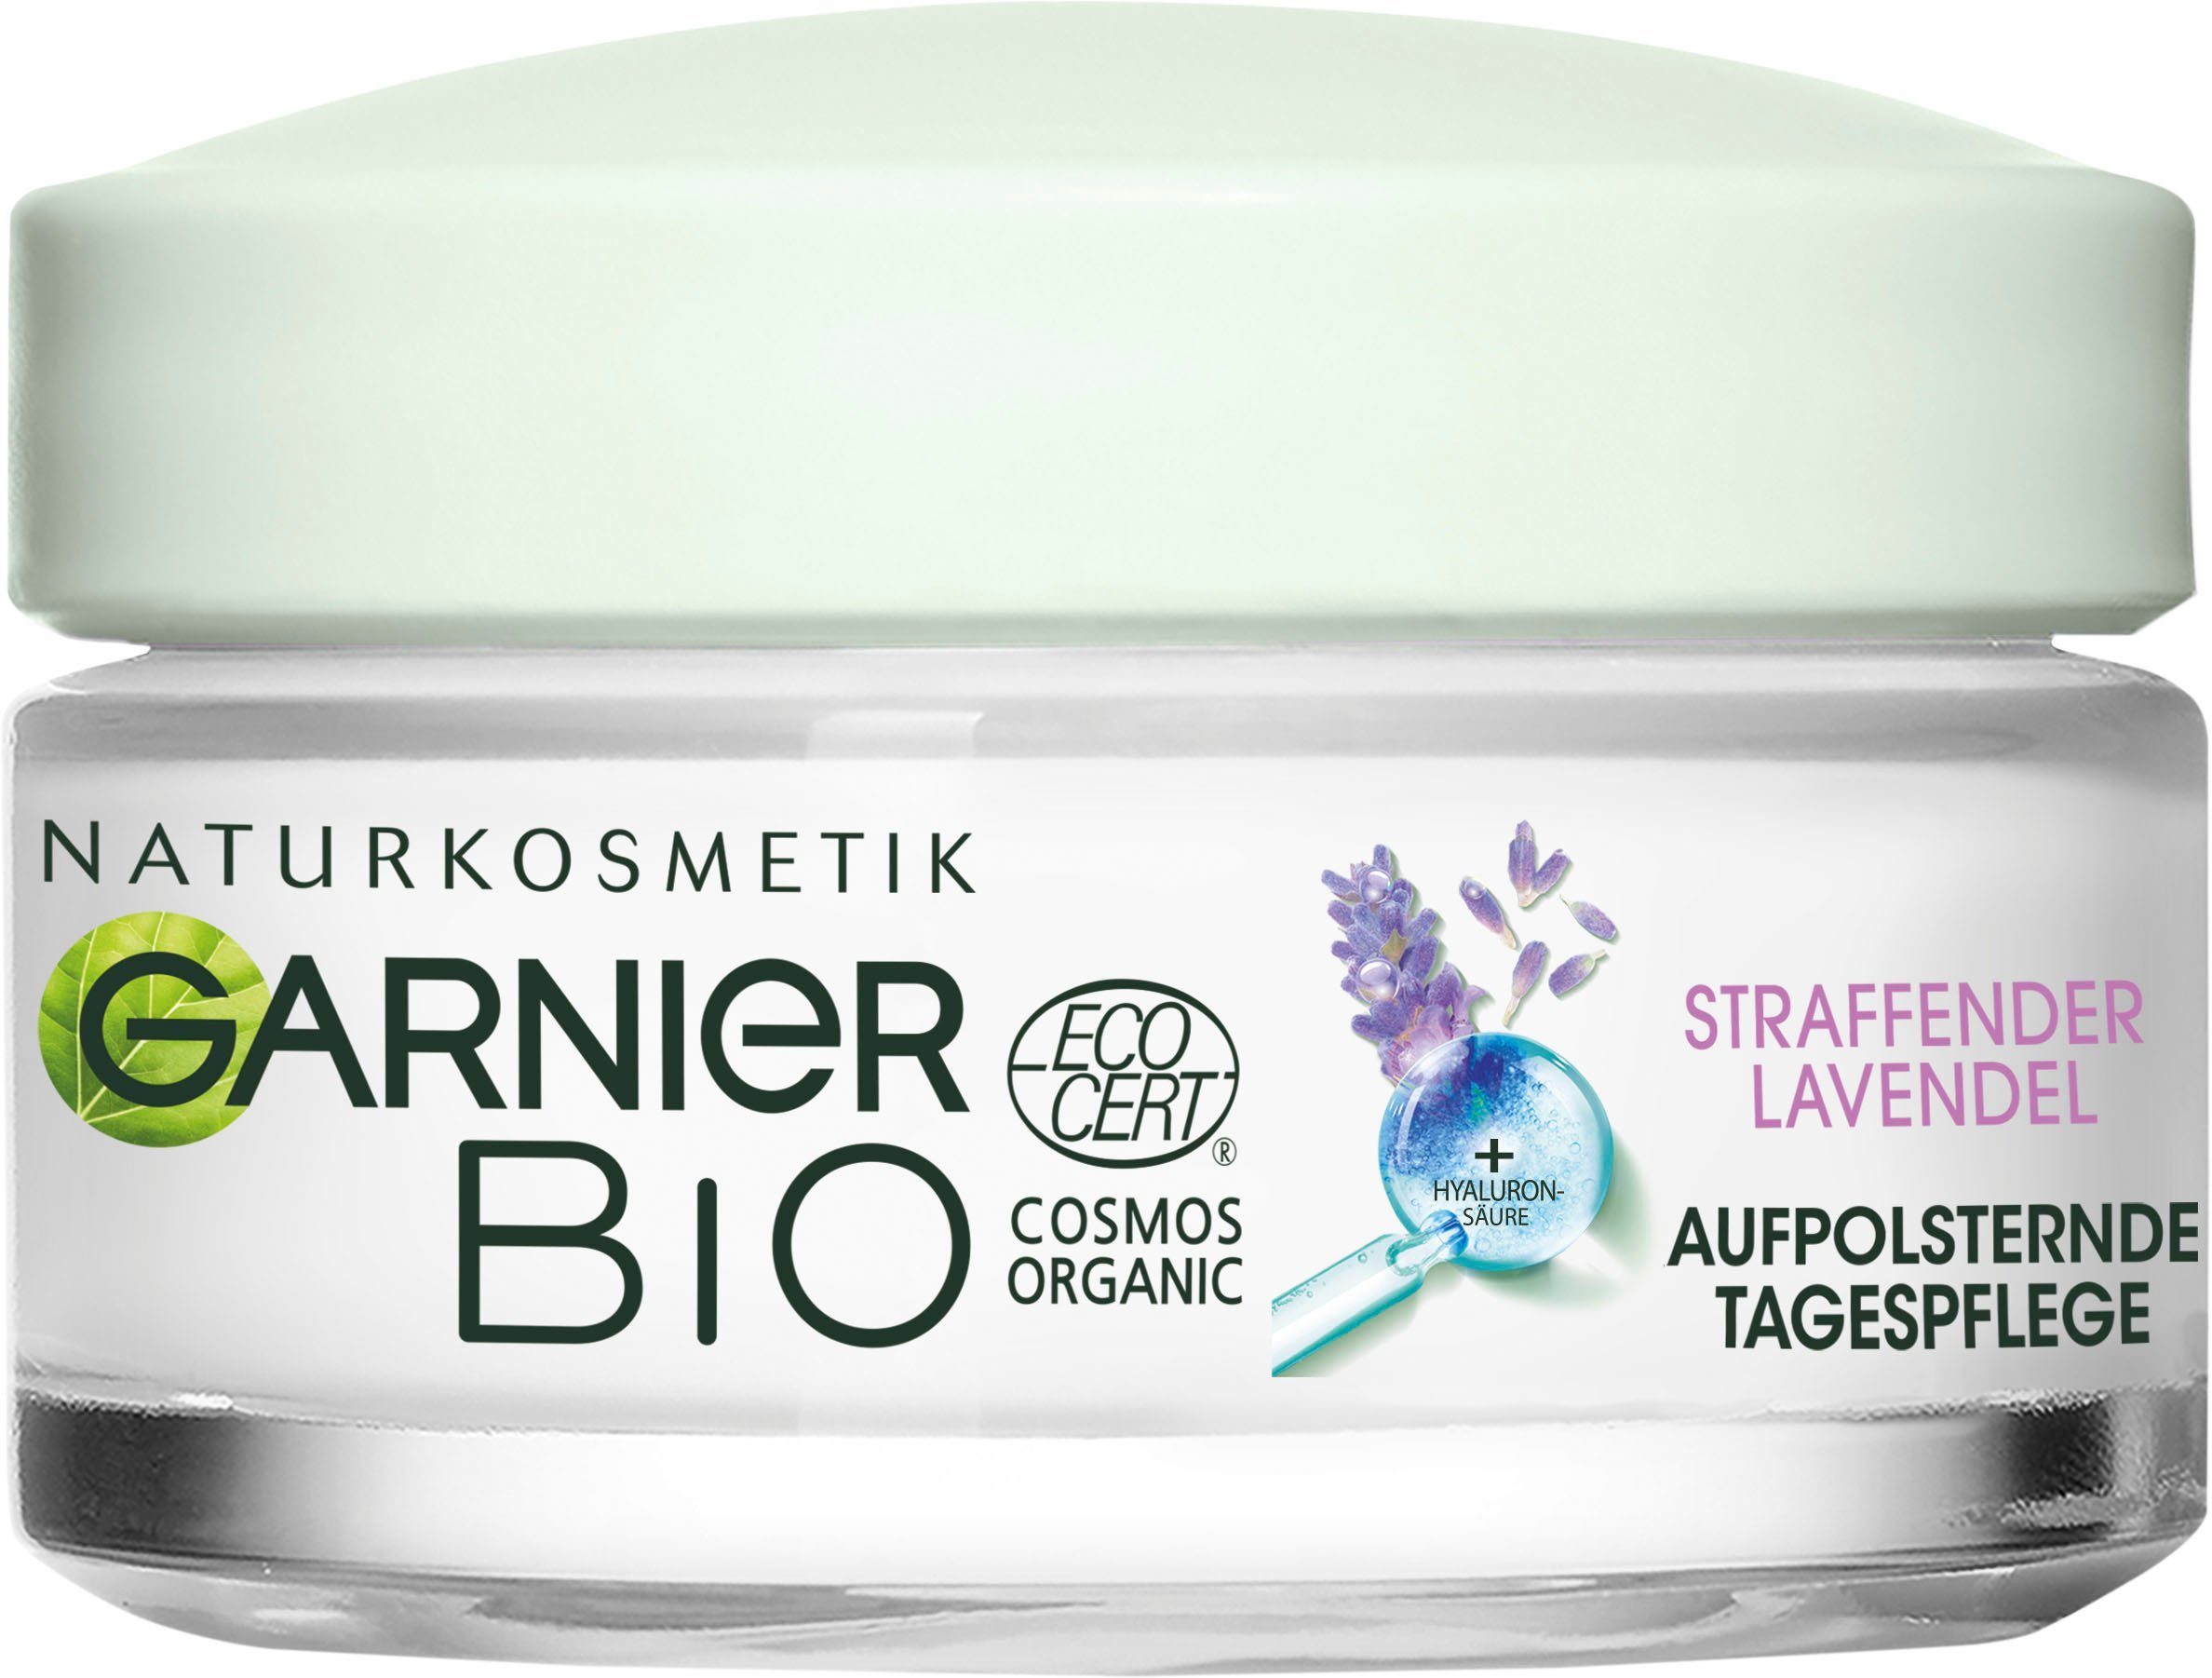 GARNIER Anti-Aging-Creme Bio Lavendel, Mit E Anbau aus Lavendel-Öl Vitamin ätherischem und biologischem antioxidativem